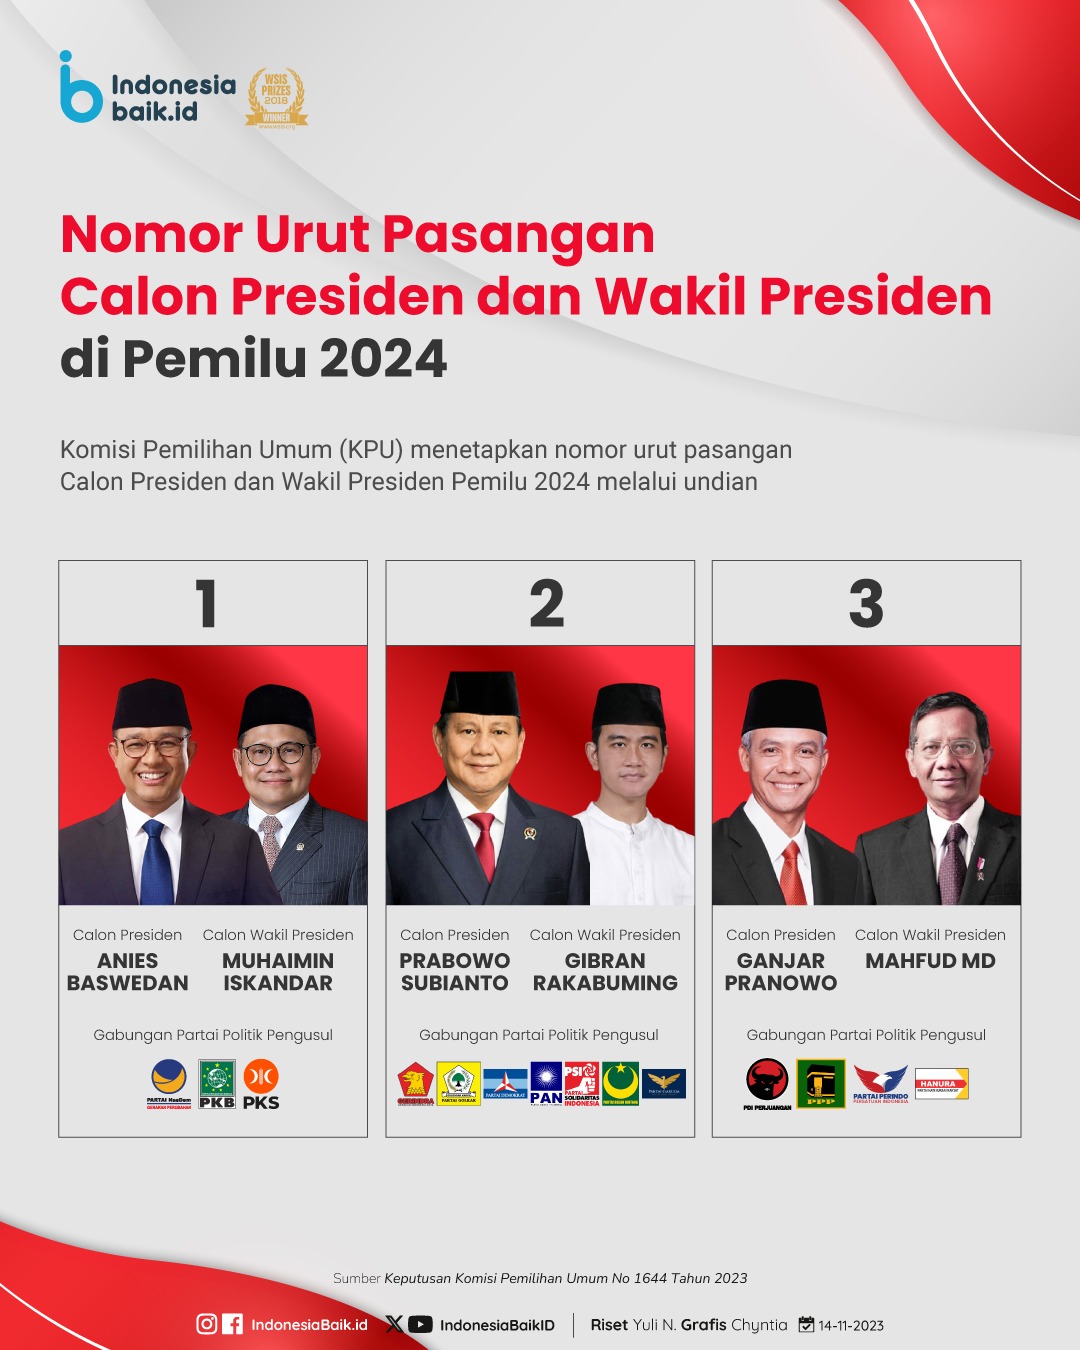 Calon Presiden dan Wakil Presiden untuk Pemilu 2024